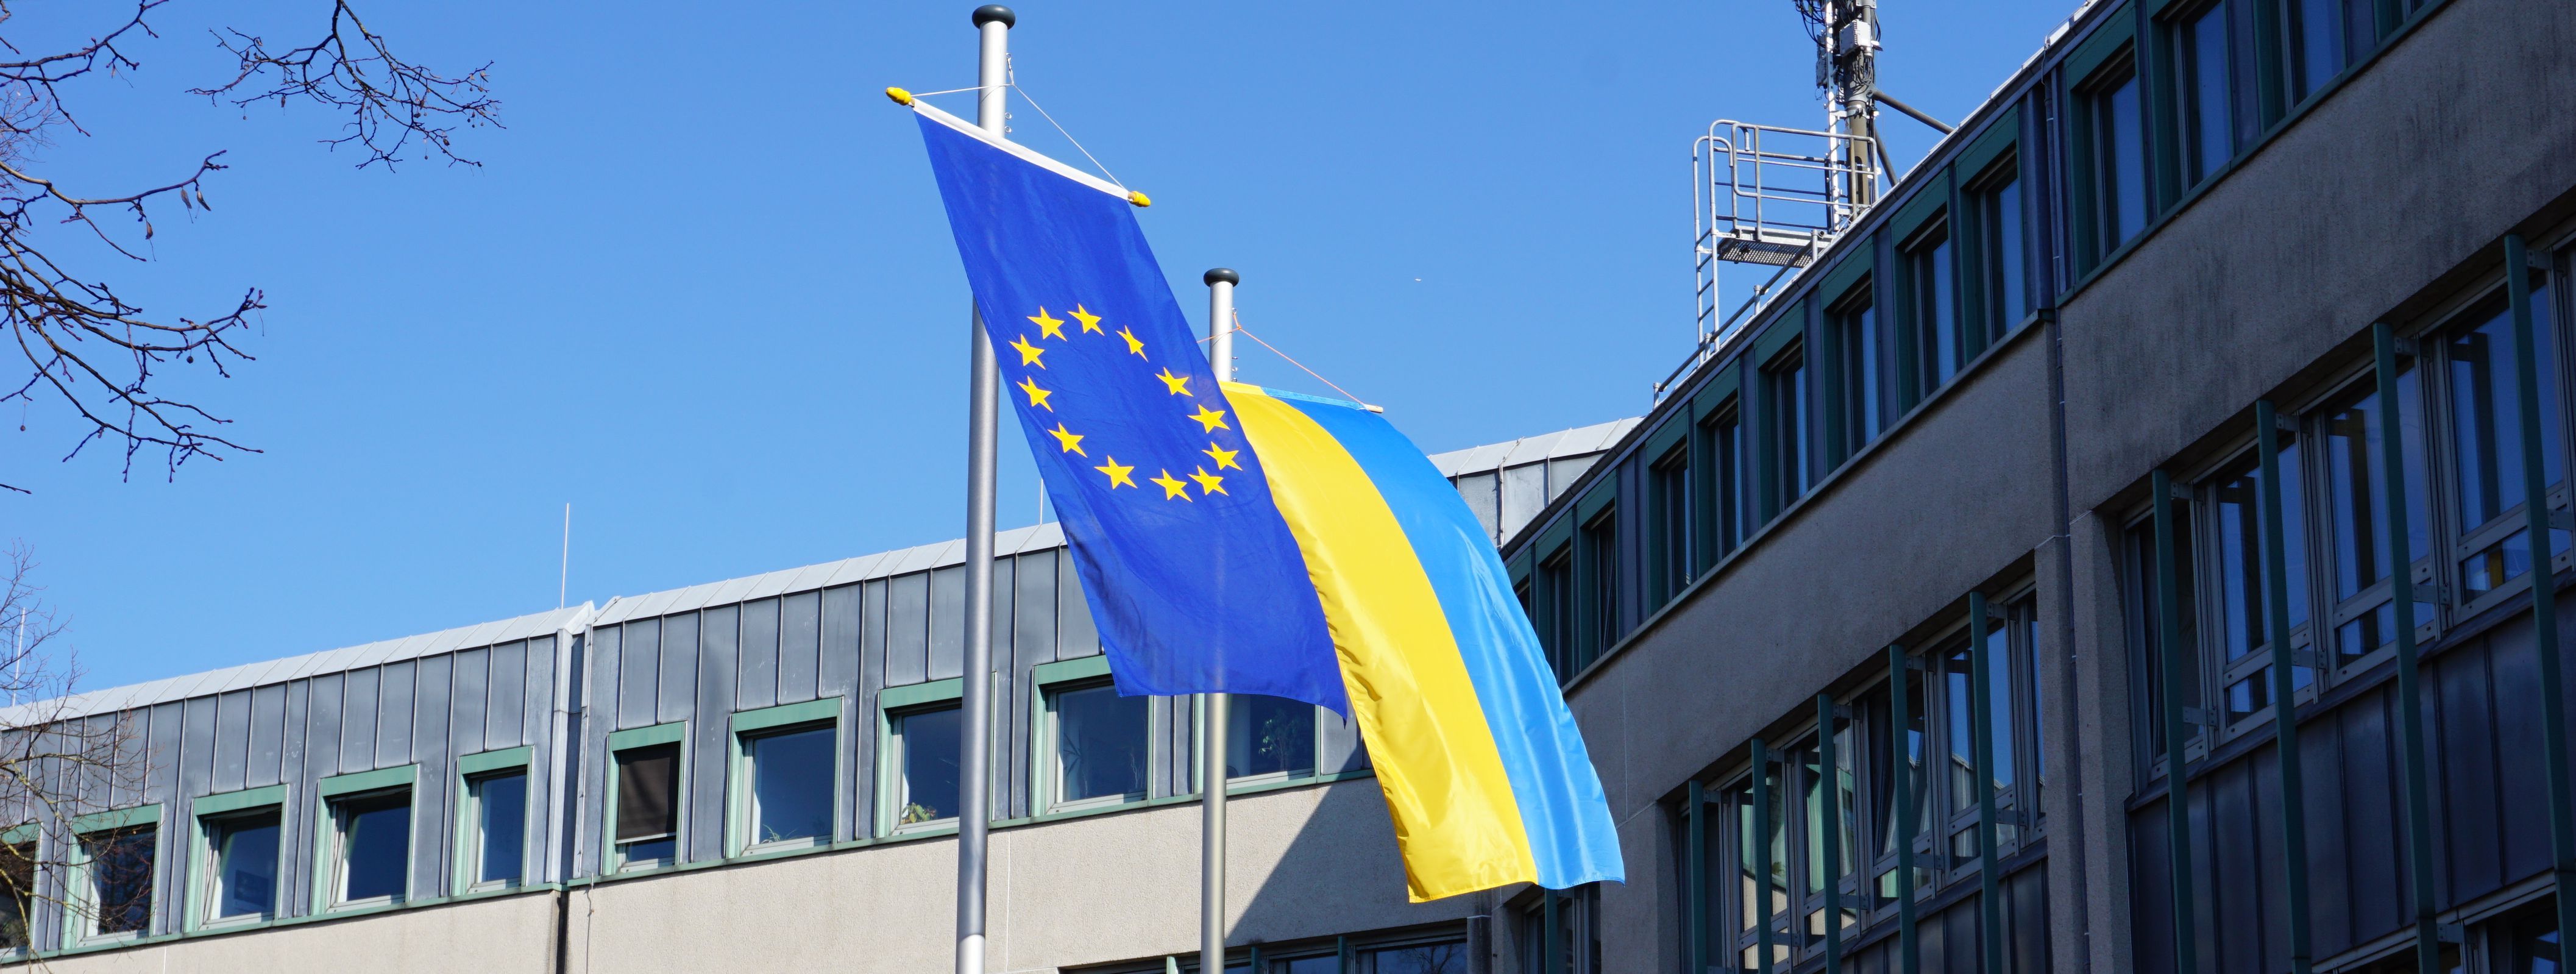 Vor dem Neuen Rathaus wehen die Flagge der Ukraine (blau/gelb) und die Europaflagge (goldene Sterne auf blauem Grund)